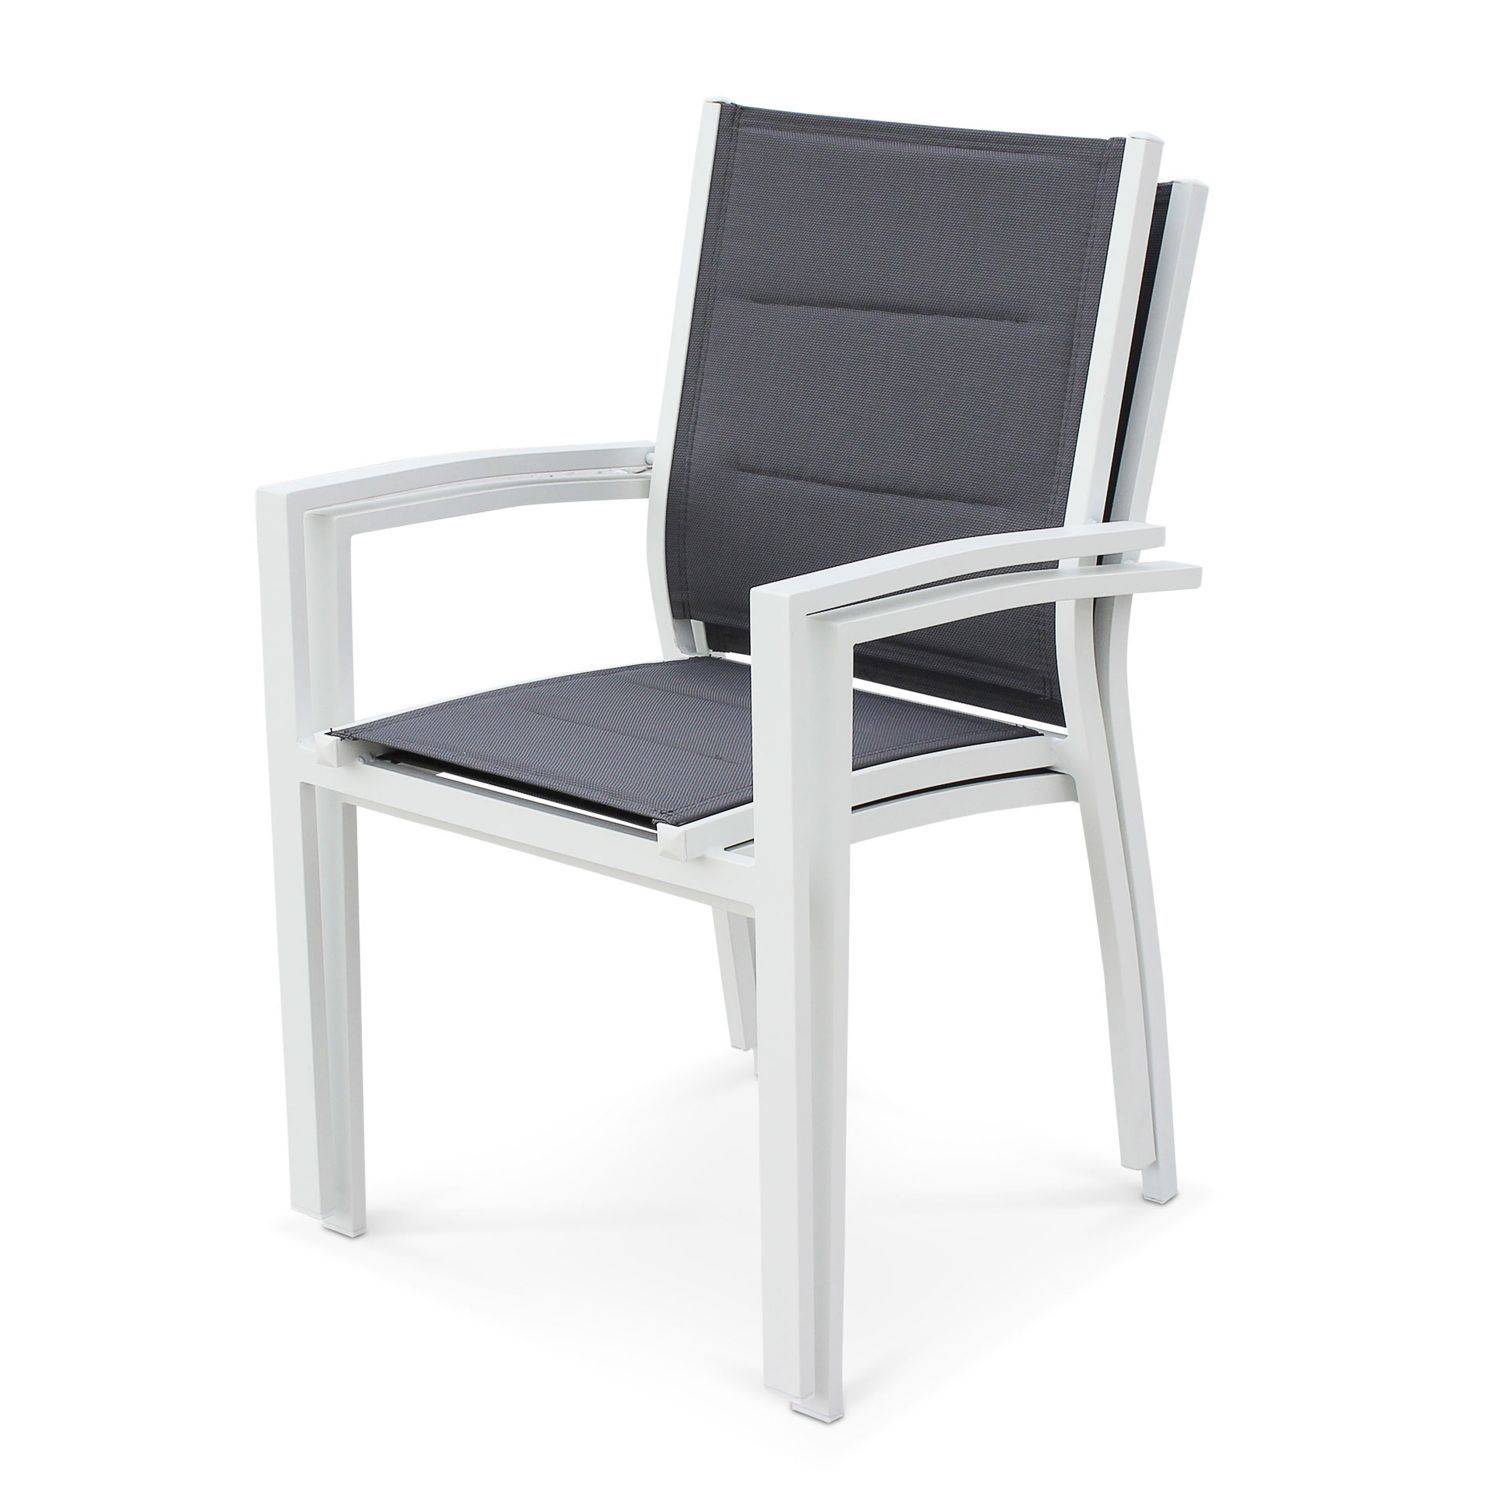 Set mit 2 Chicago-Sesseln - Weißes Aluminium und dunkelgraues Textilene, stapelbar Photo2